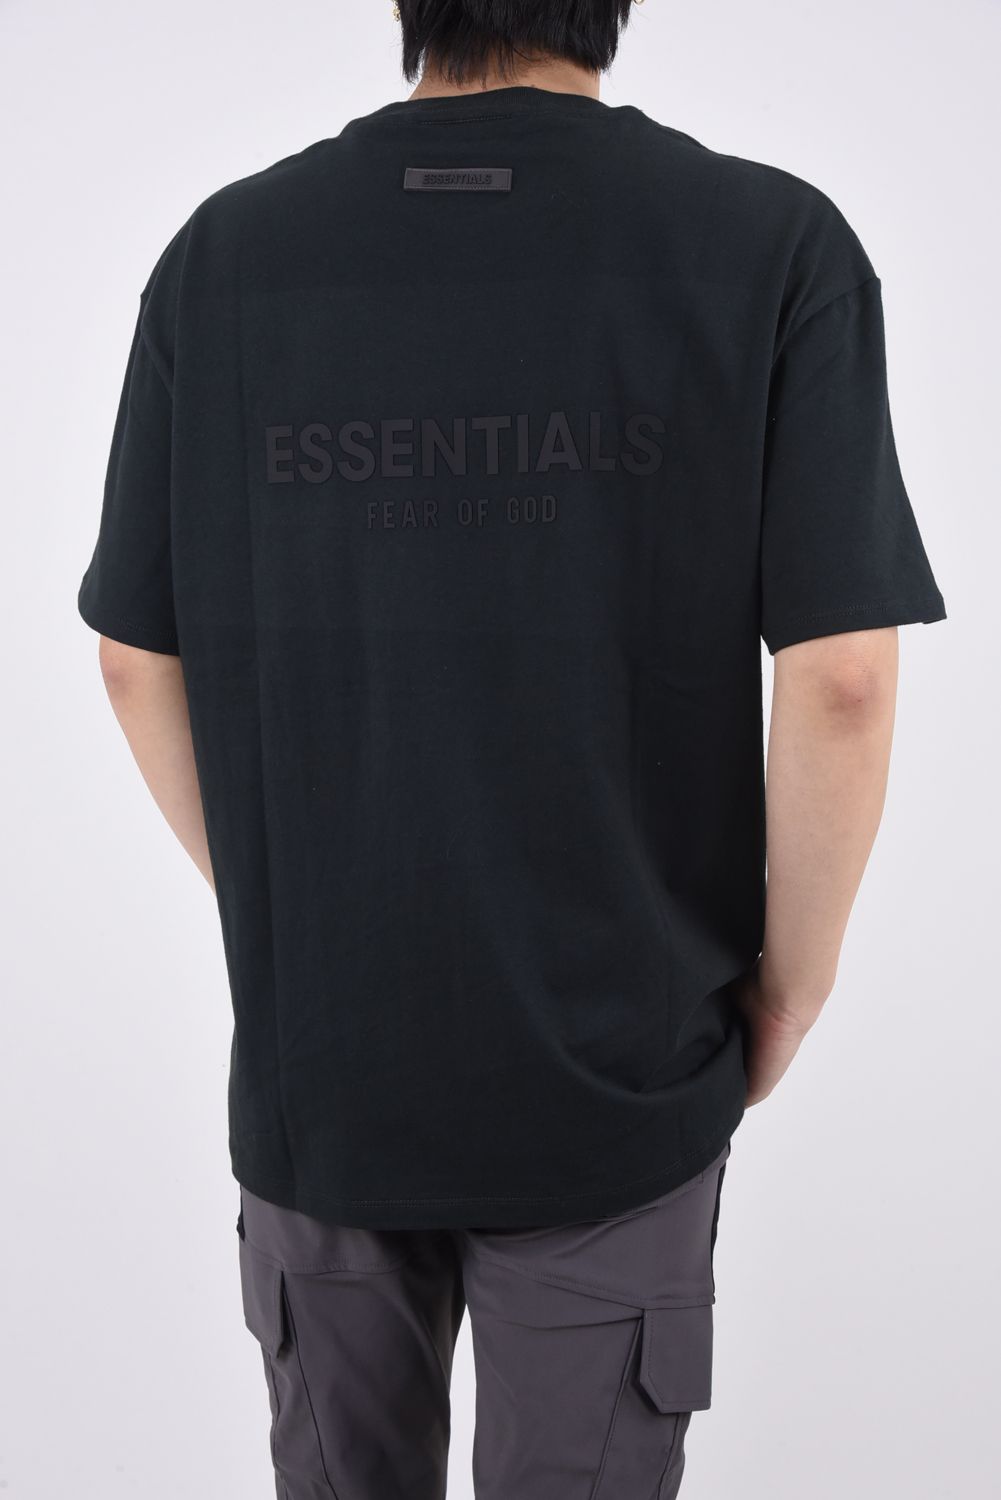 新品 FOG ESSENTIALS XL CORE Tシャツ ブラック